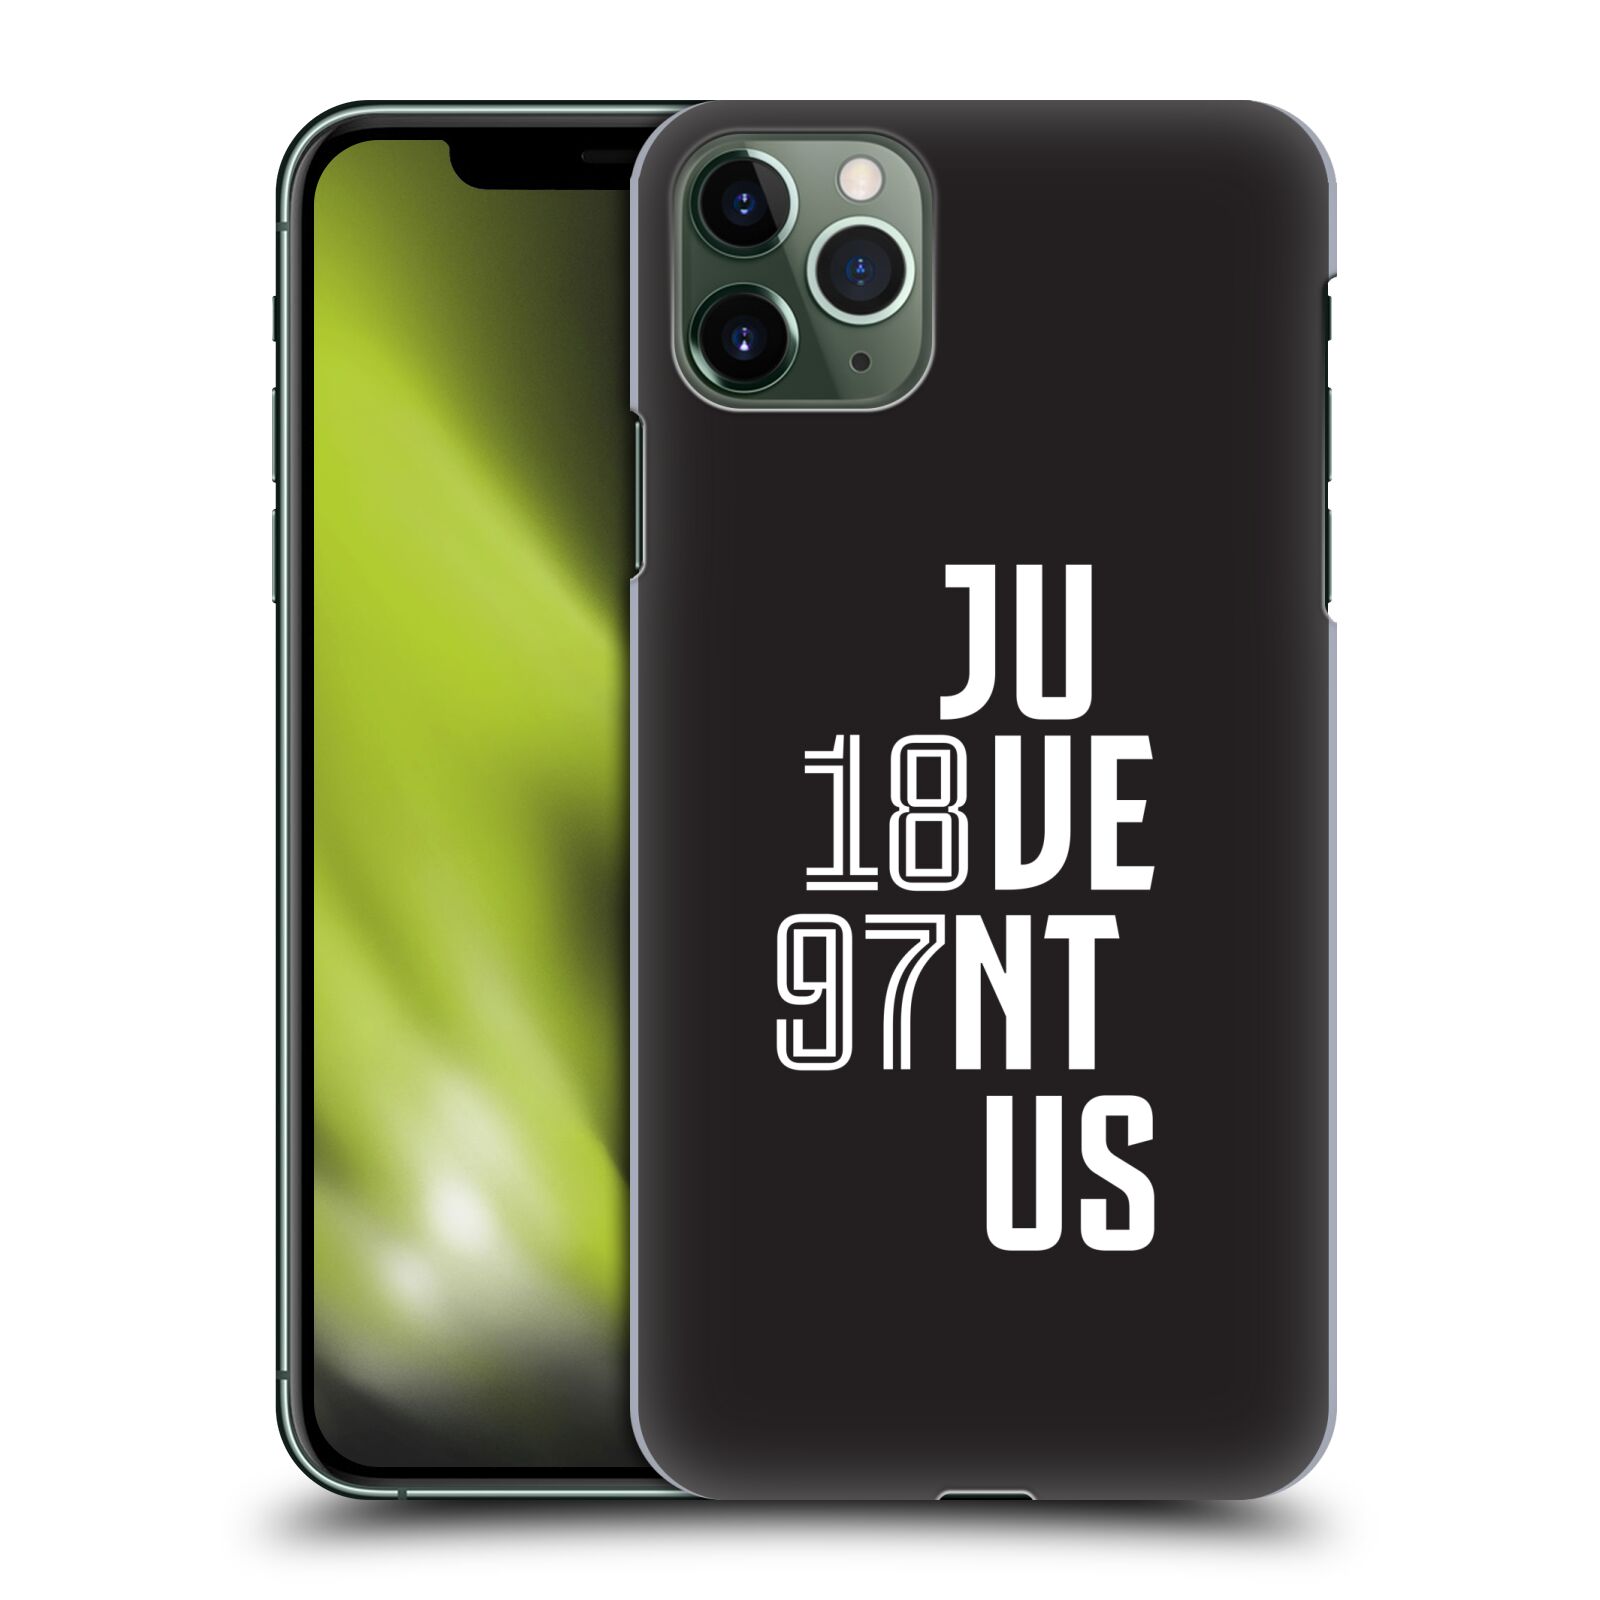 Zadní obal pro mobil Apple Iphone 11 PRO MAX - HEAD CASE - Fotbalový klub Juventus - Velké písmo